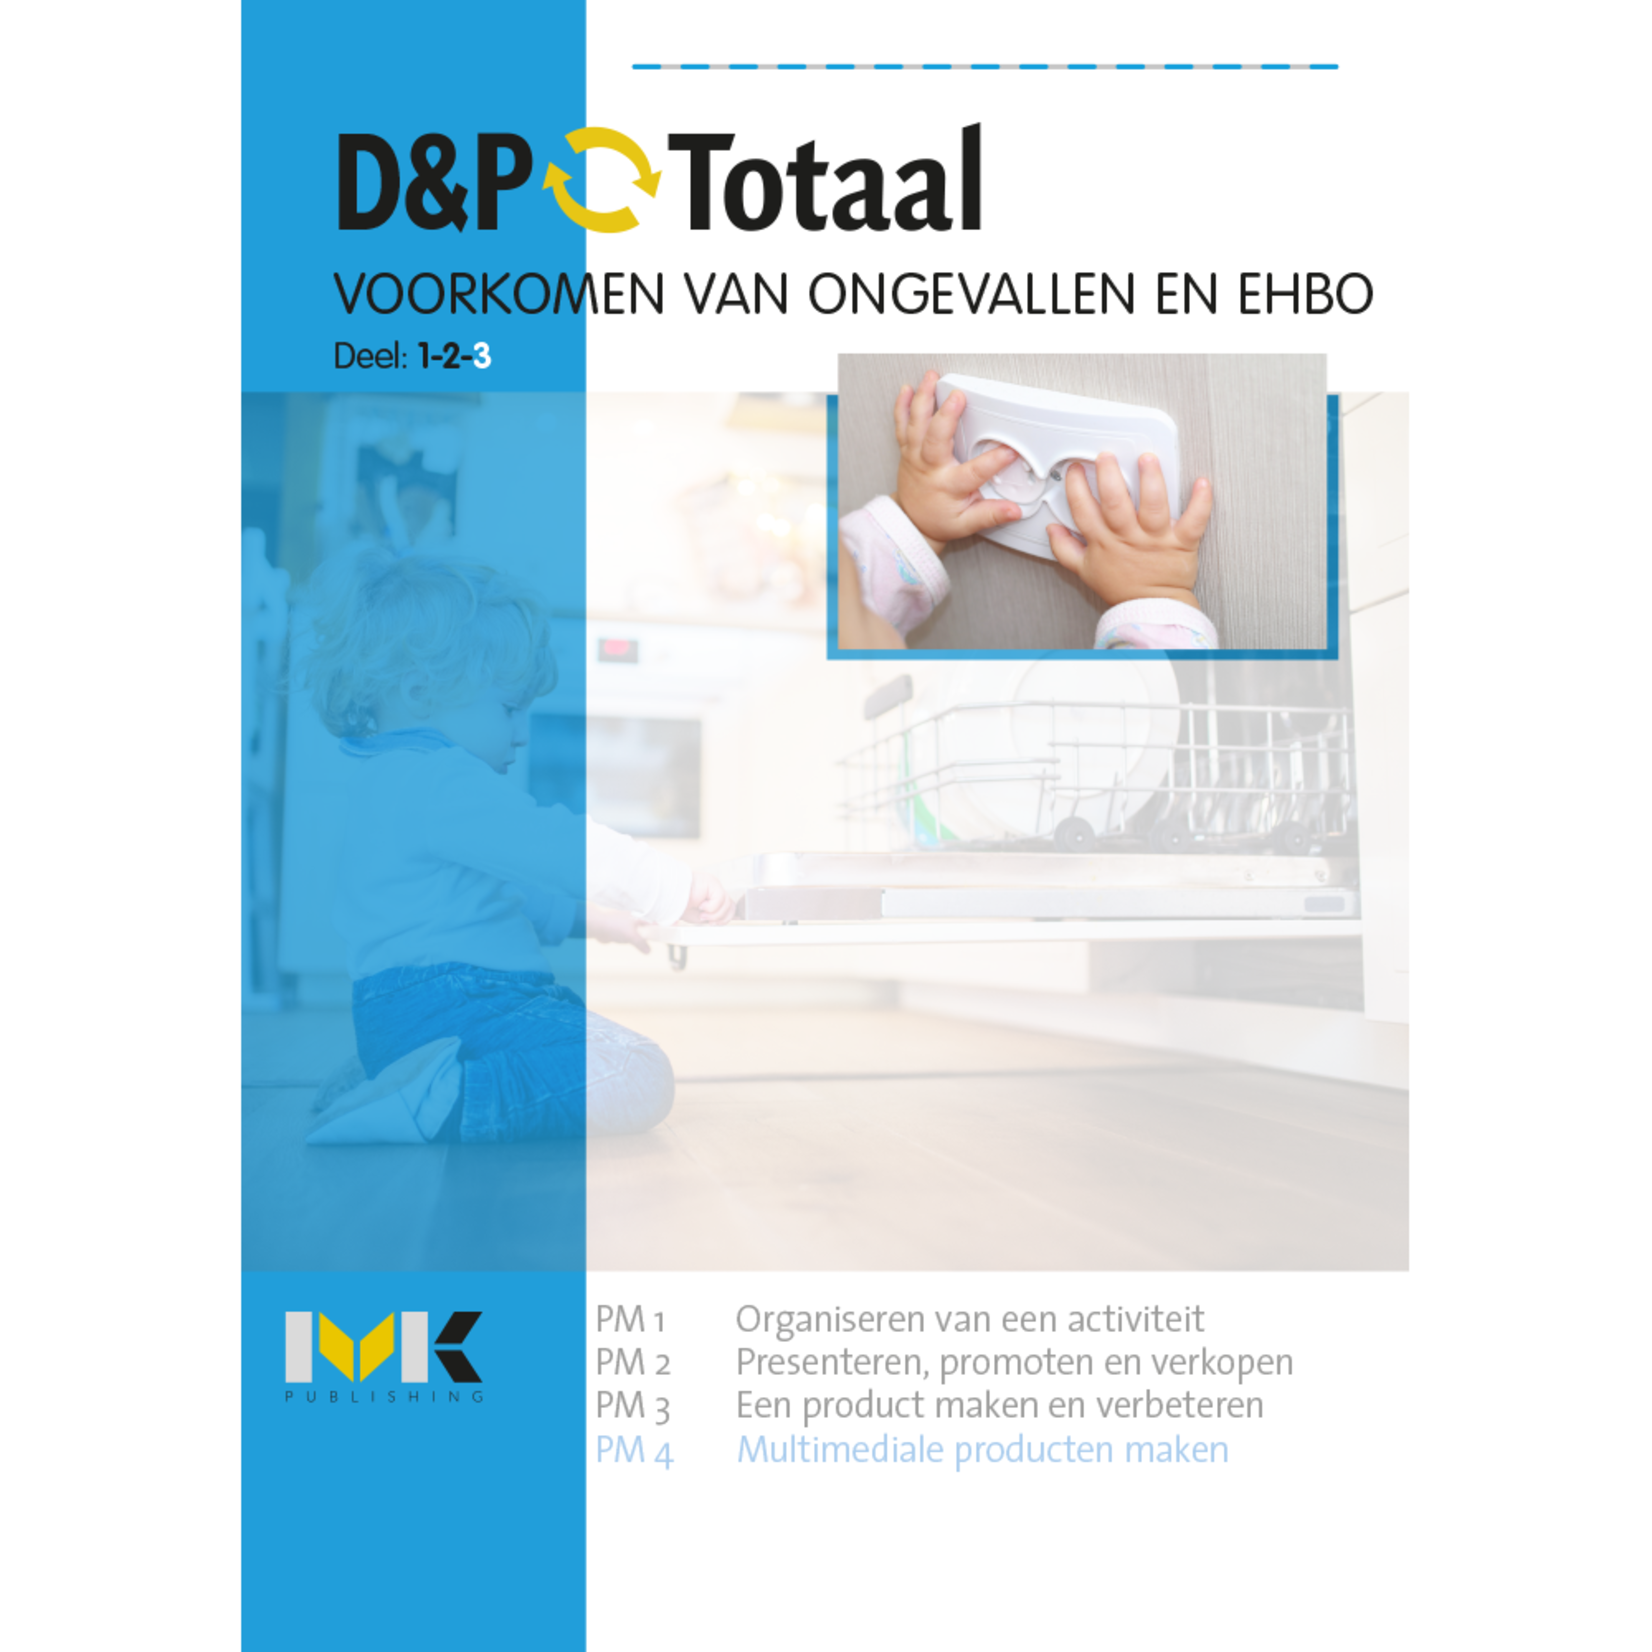 D&P-Totaal - Z&W Voorkomen van ongevallen en EHBO (PM4/1617)